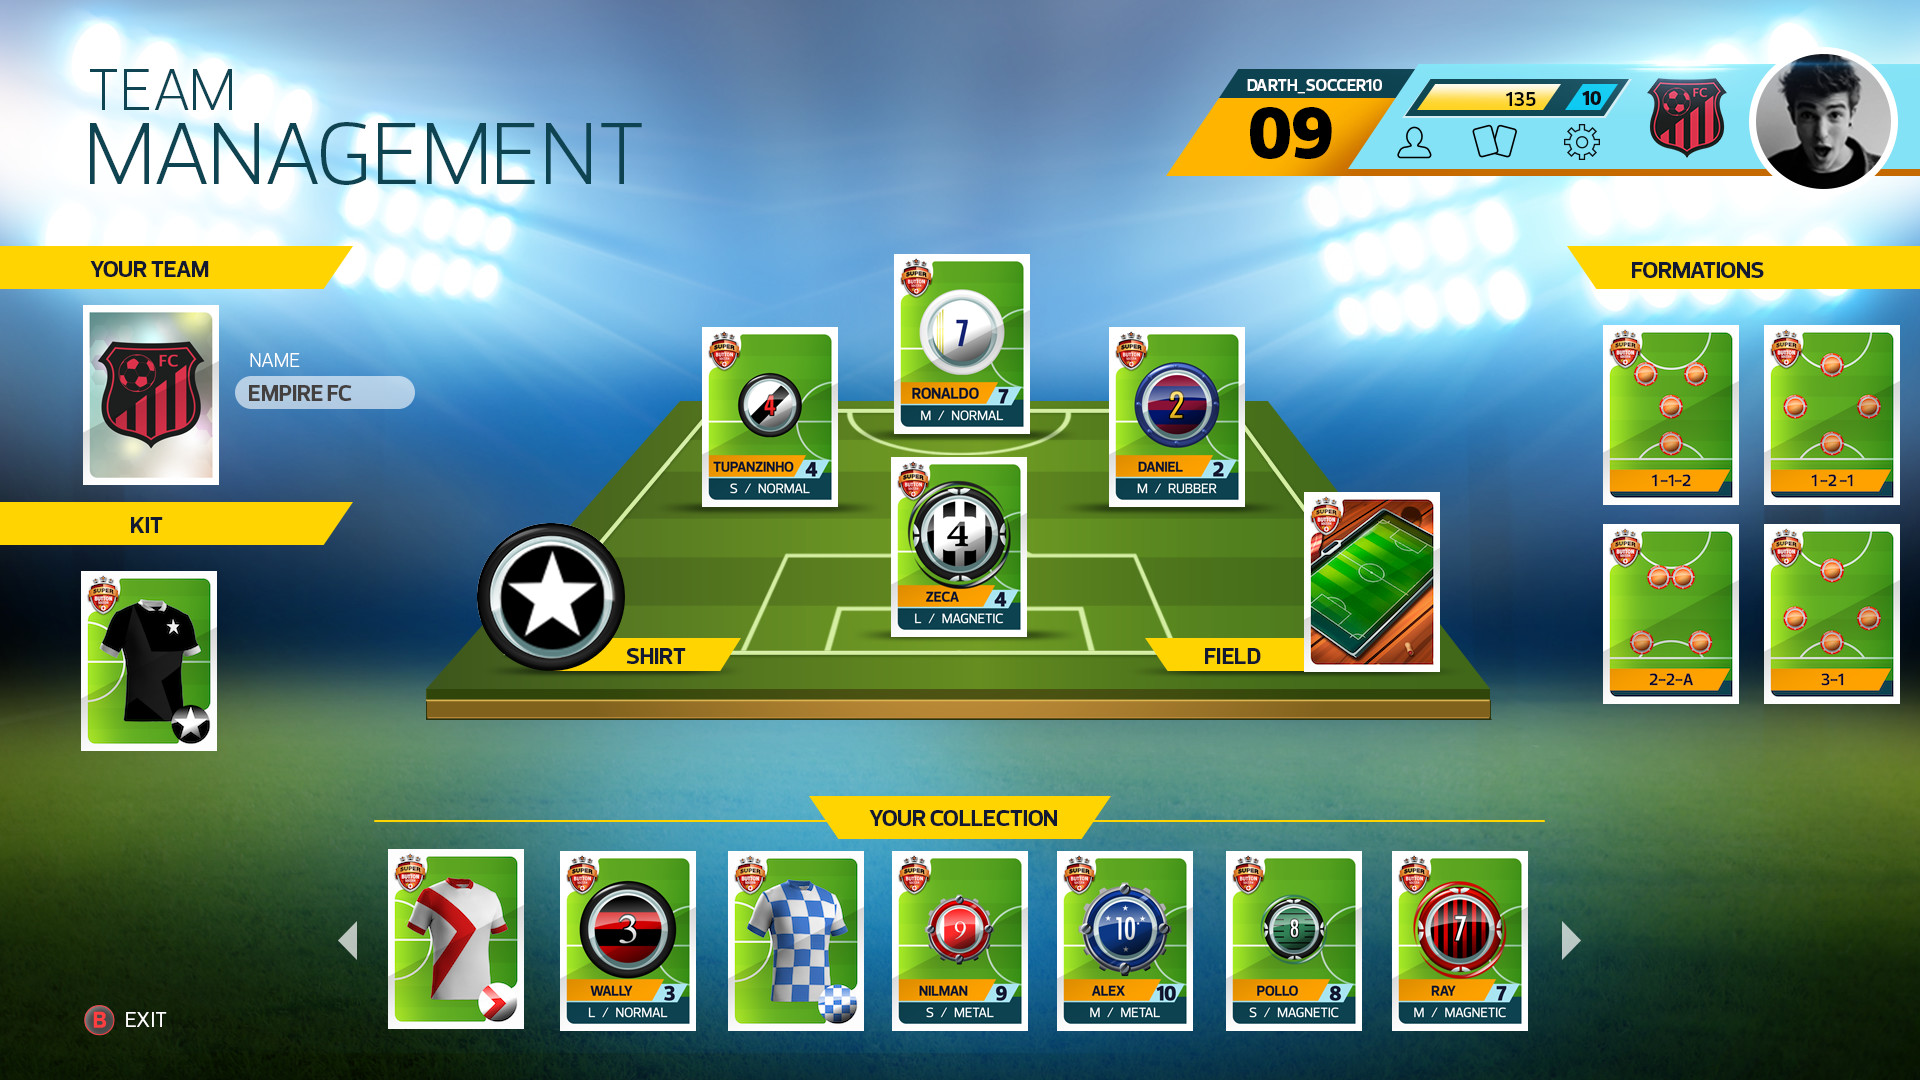 Futebol de botão vira videogame em Super Button Soccer, disponível no Steam  